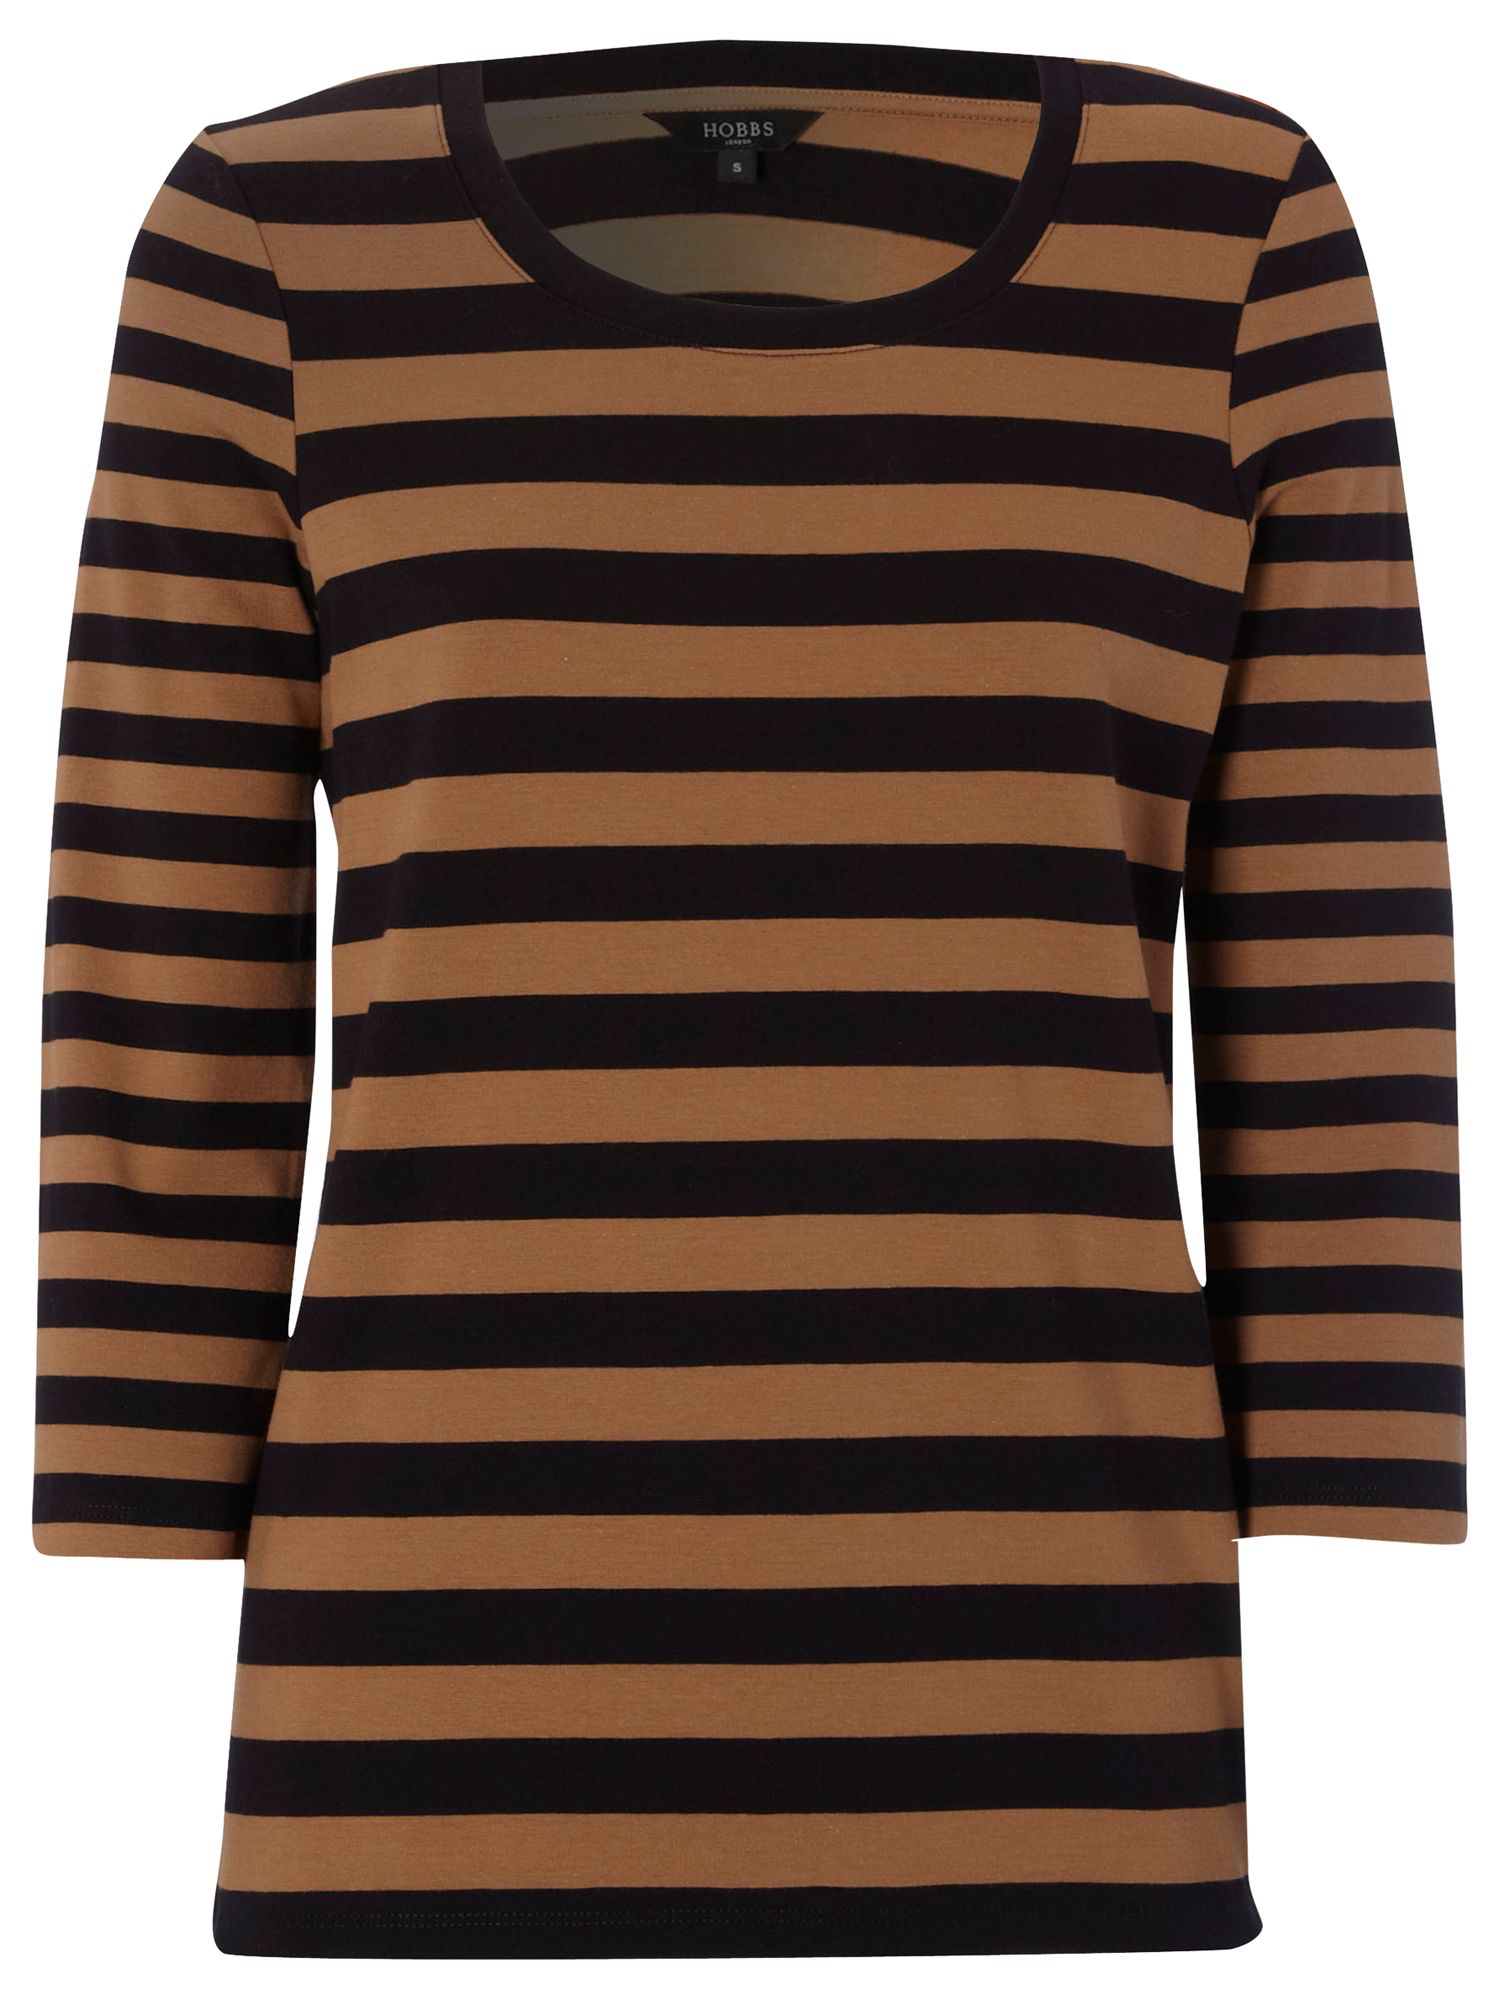 Hobbs Croft Striped T-Shirt, Navy Vicuna